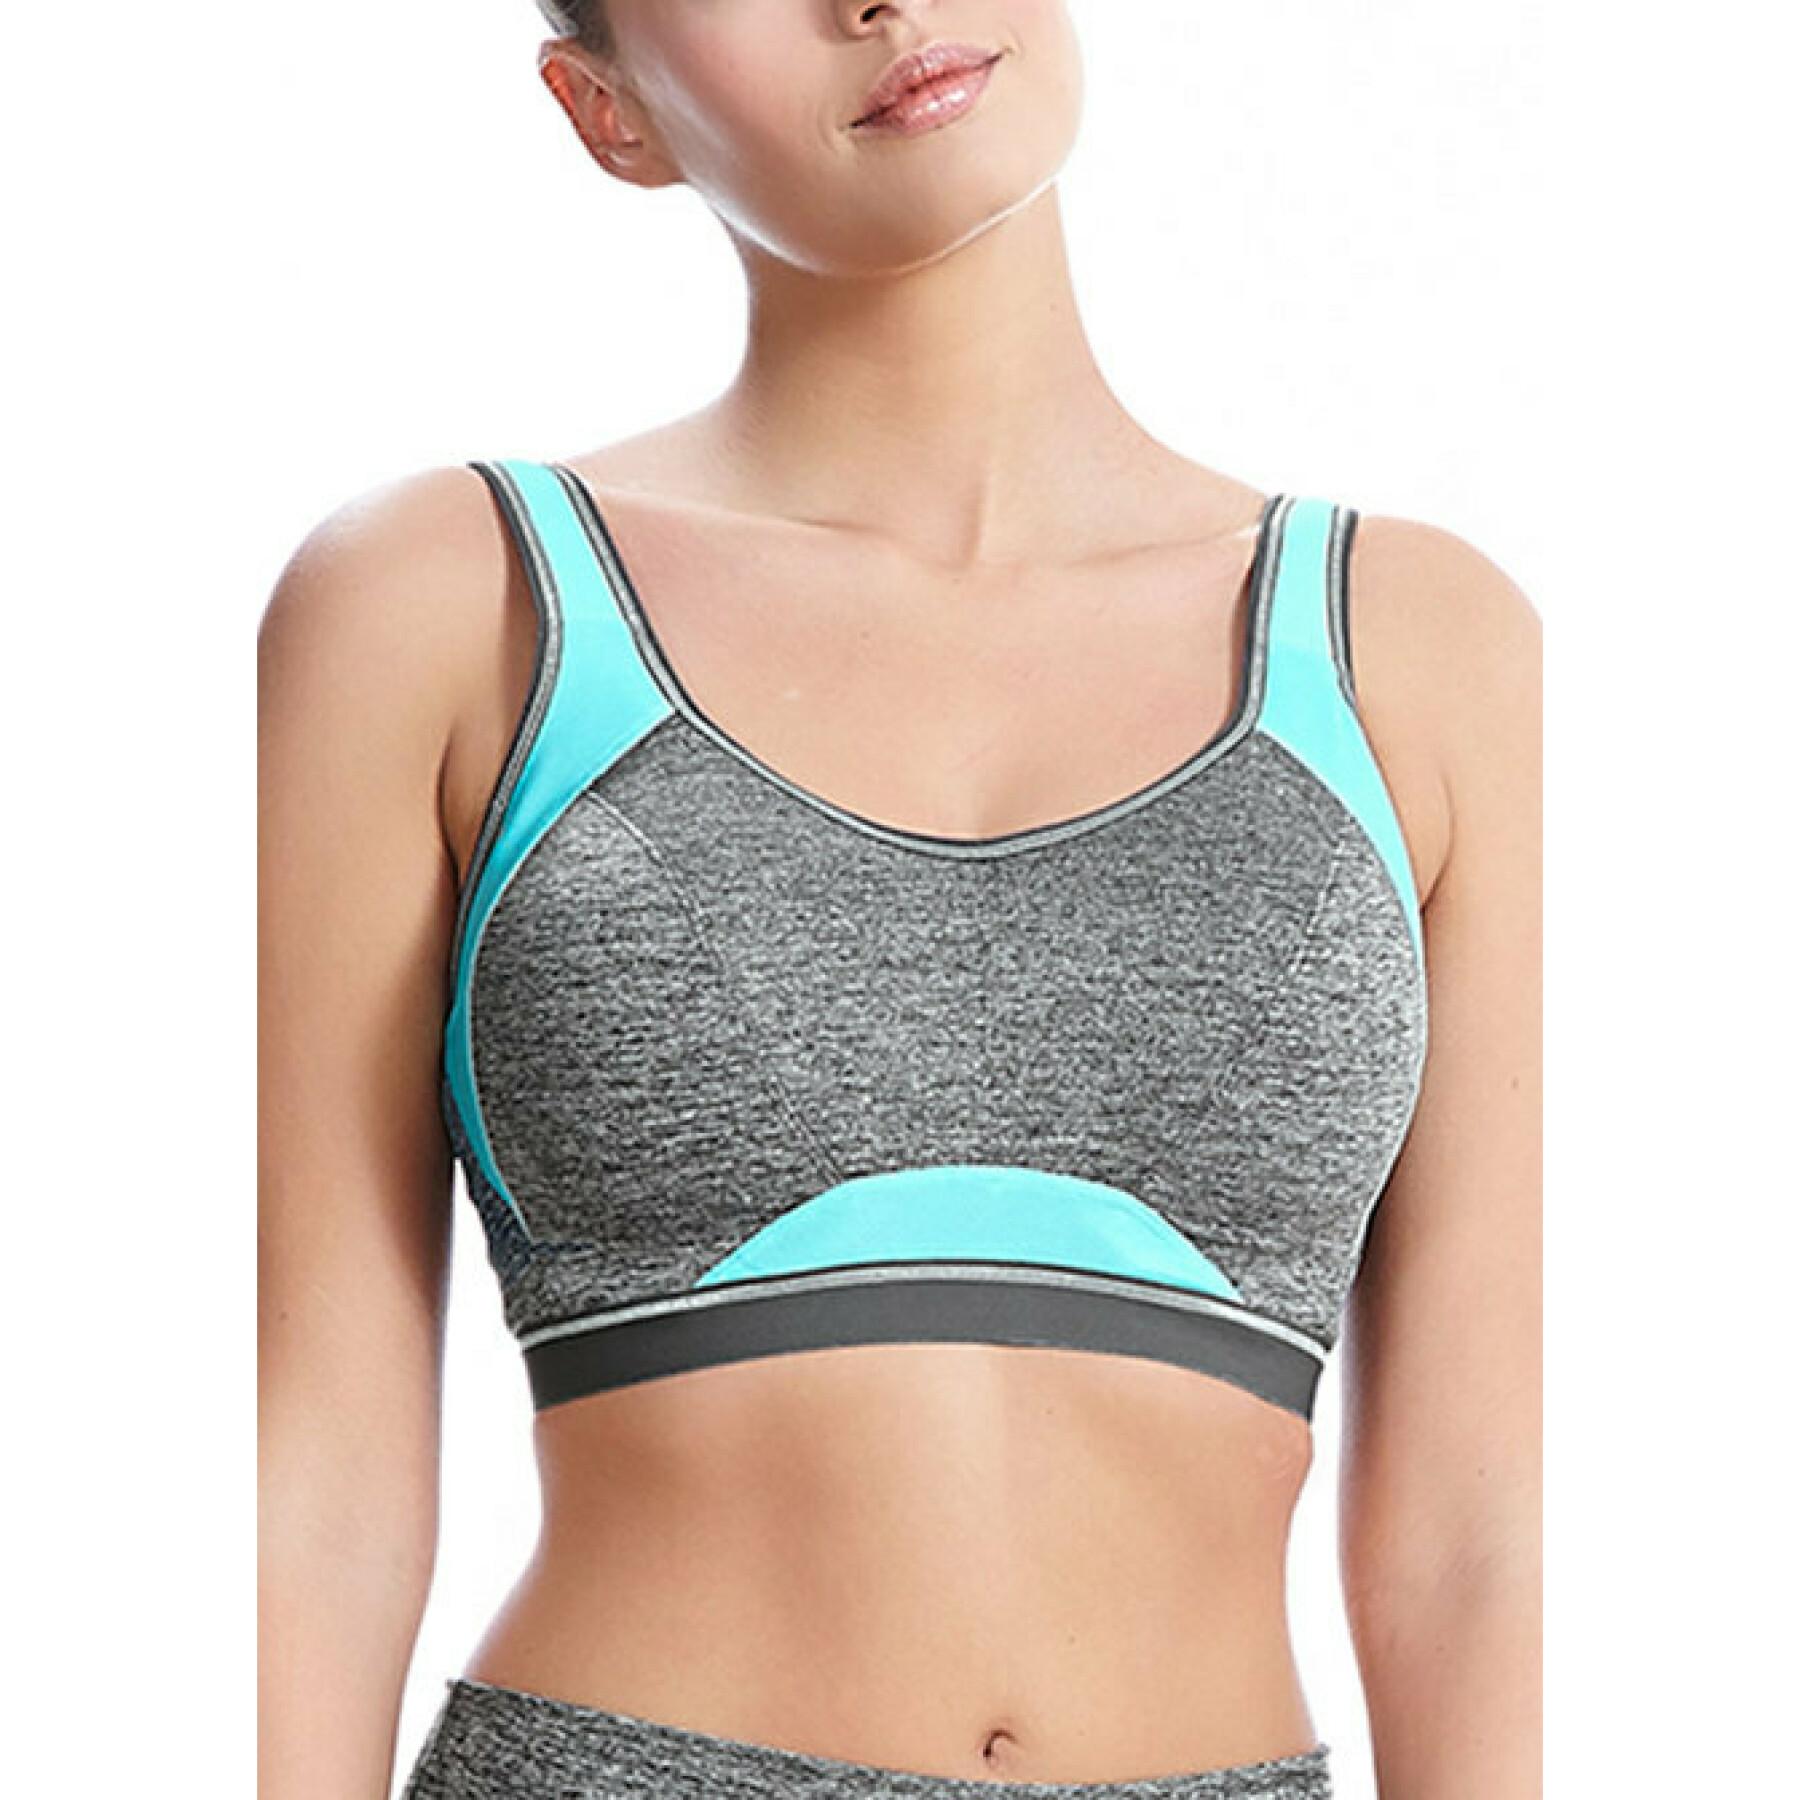 Women's bra Freya Epic Carbon SG - Bras & Underwear - Women's Sportswear -  Sport